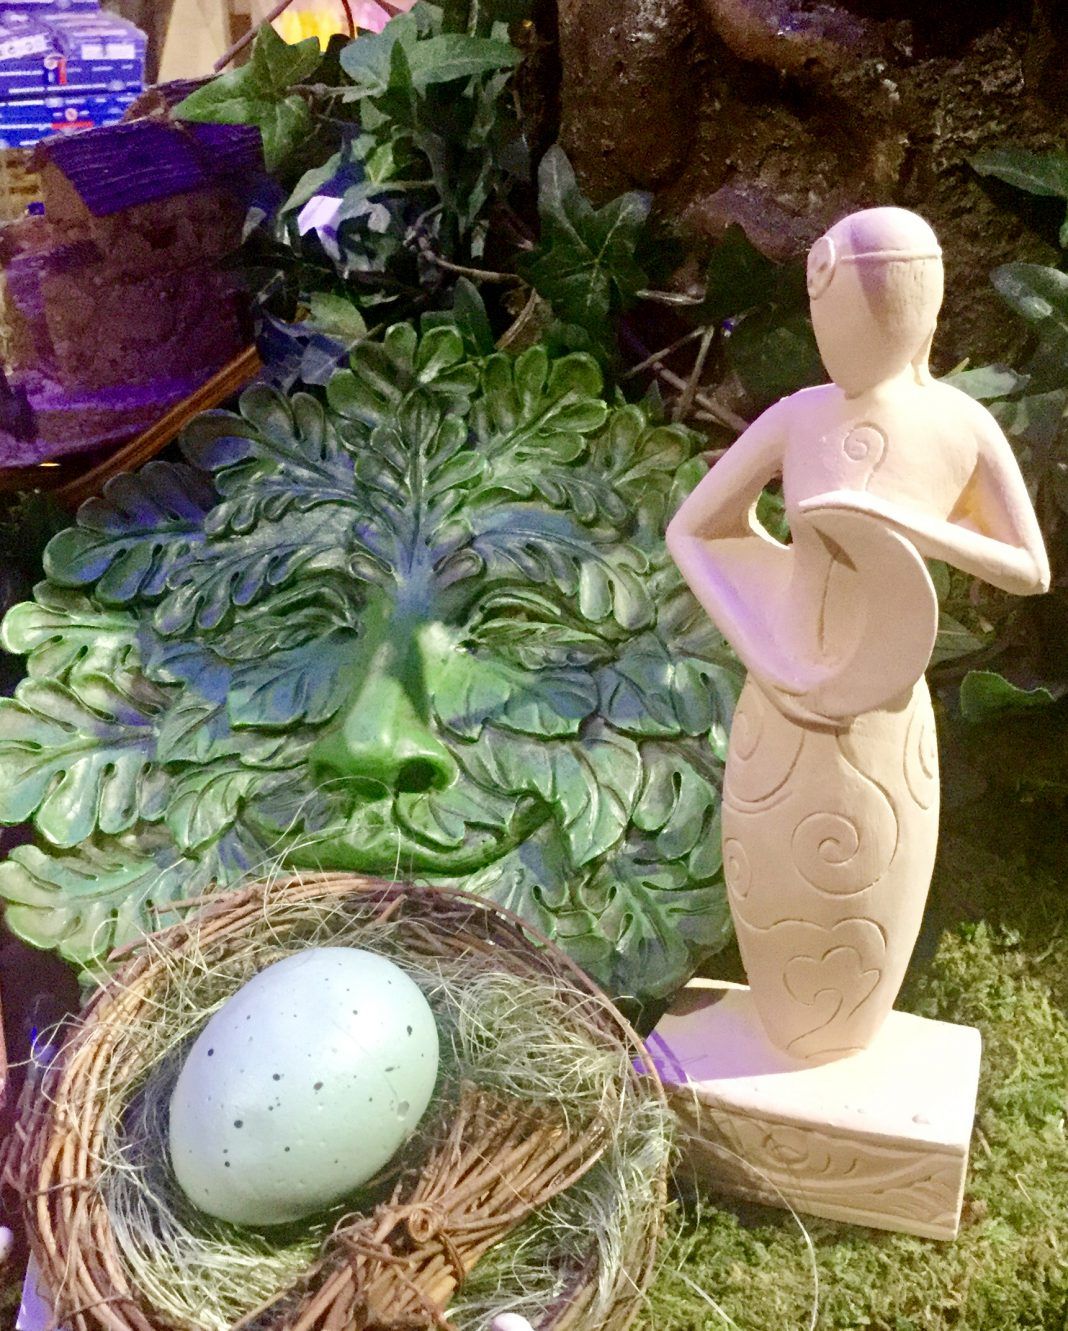 Gartendeko Selbstgemacht Schön A Spring Goddess Statue Stands Next to An Egg the Egg is A